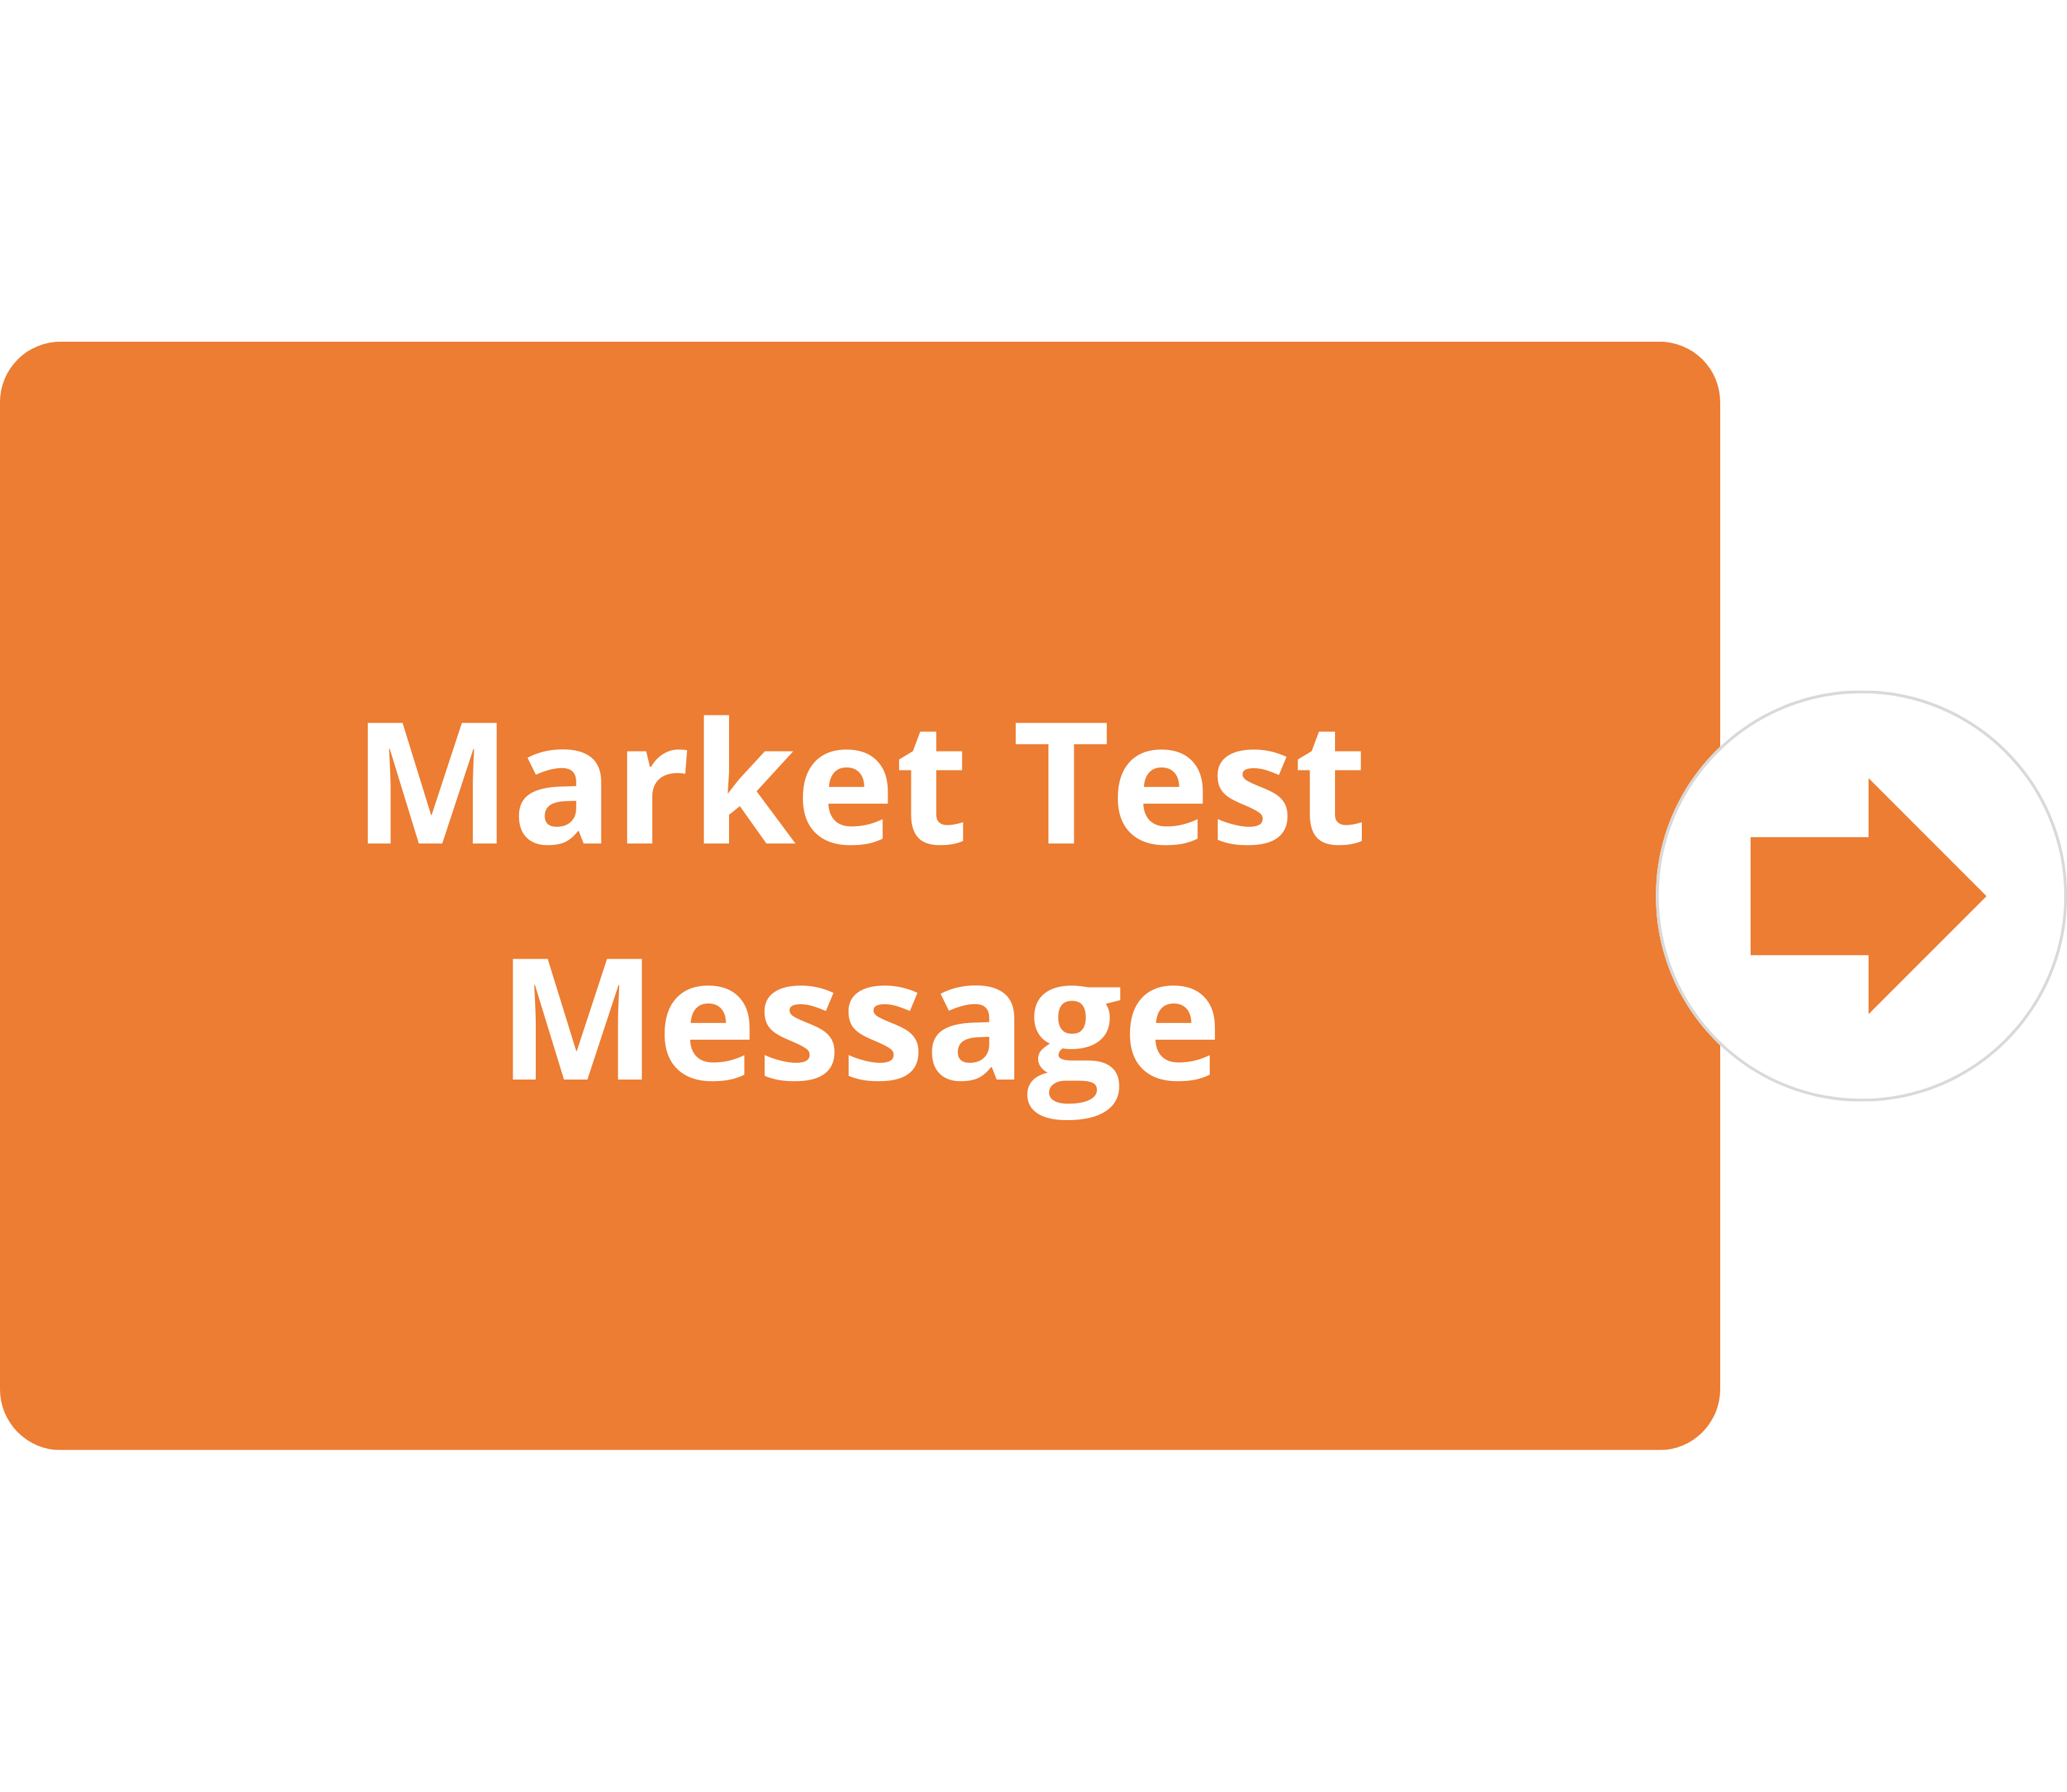 Market Test Message